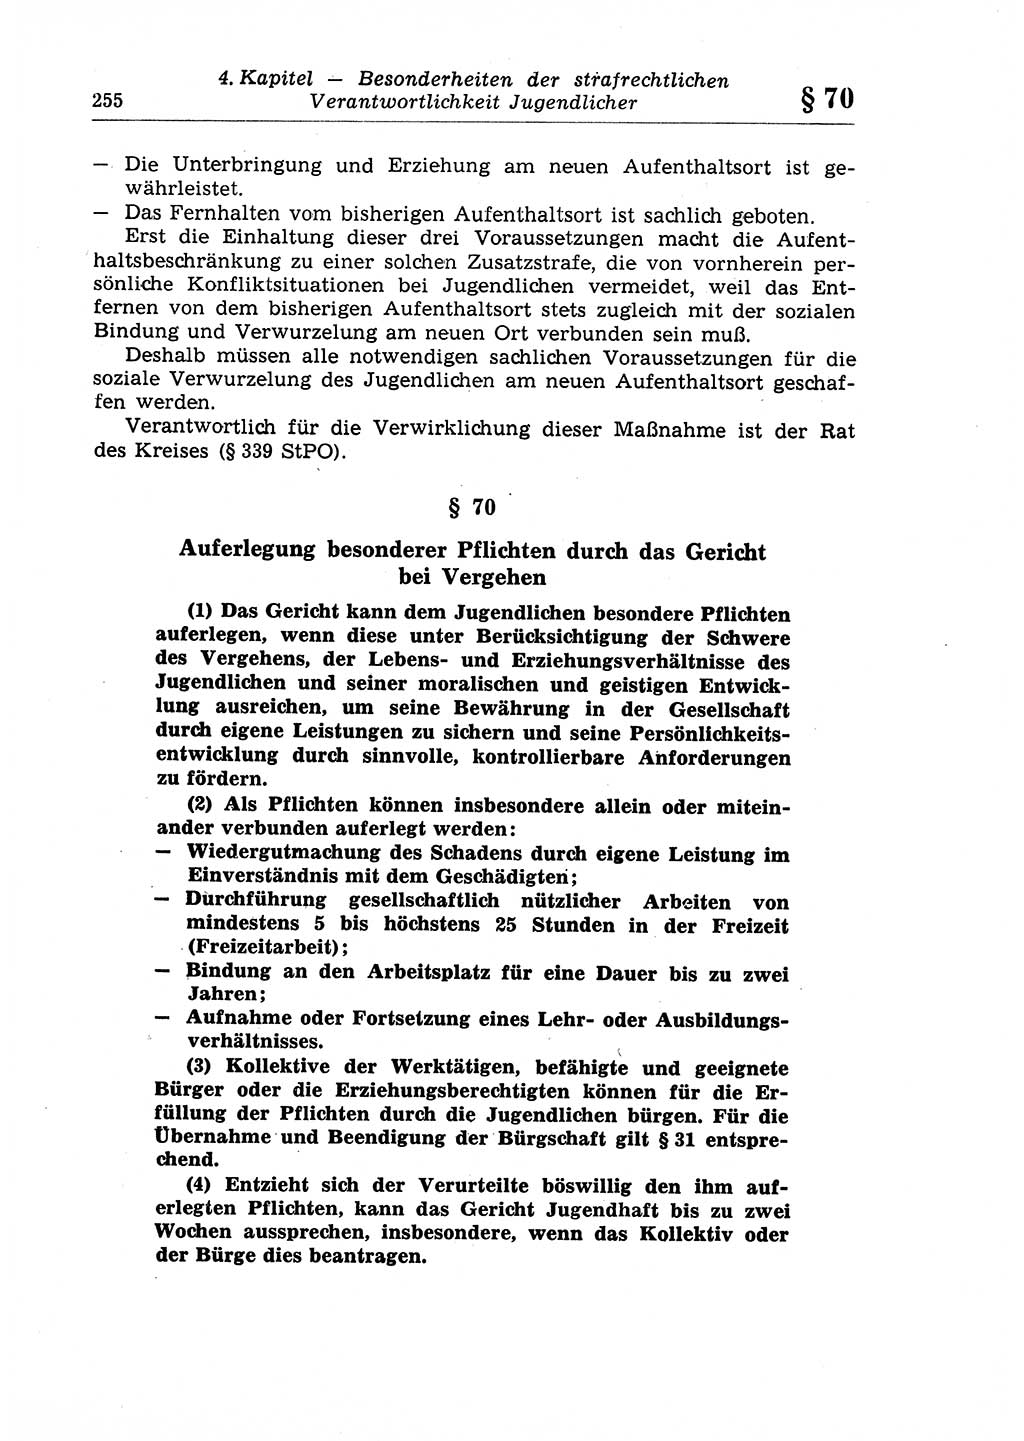 Strafrecht der Deutschen Demokratischen Republik (DDR), Lehrkommentar zum Strafgesetzbuch (StGB), Allgemeiner Teil 1970, Seite 255 (Strafr. DDR Lehrkomm. StGB AT 1970, S. 255)